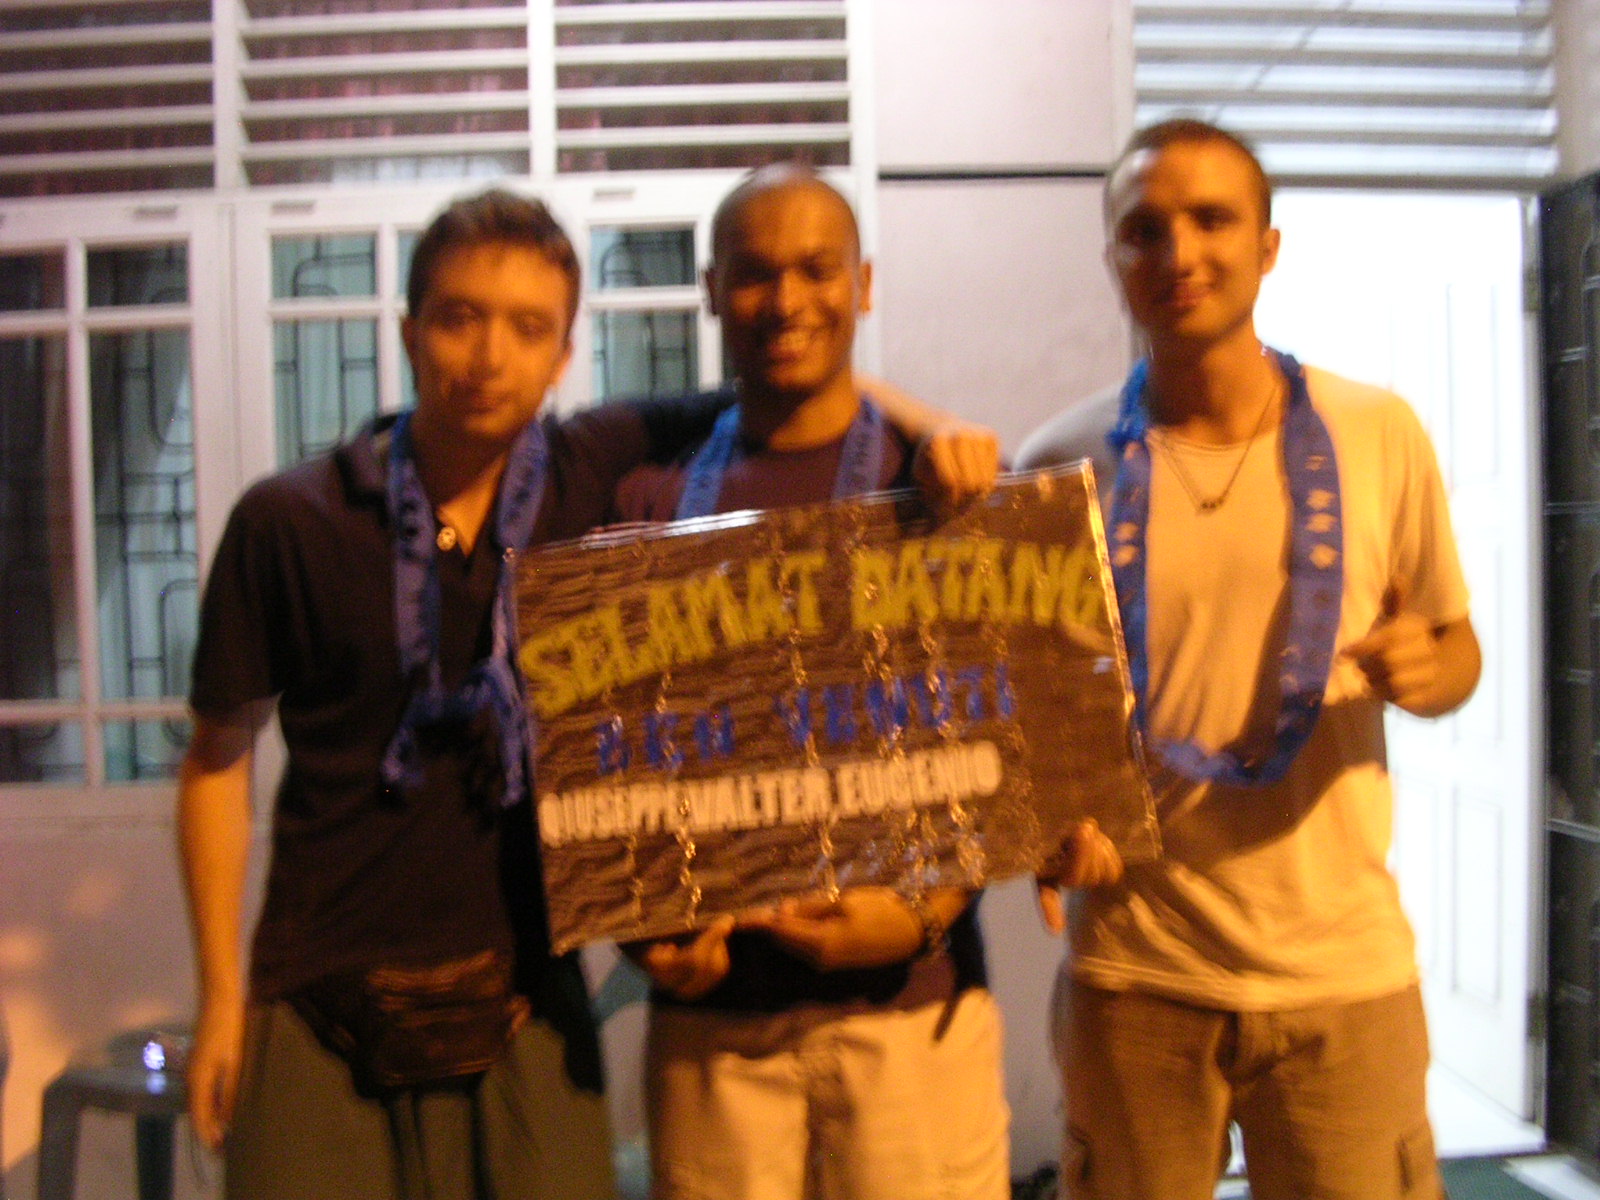 Eugenio, eu e Giuseppe com a faixa de Salamat Datang